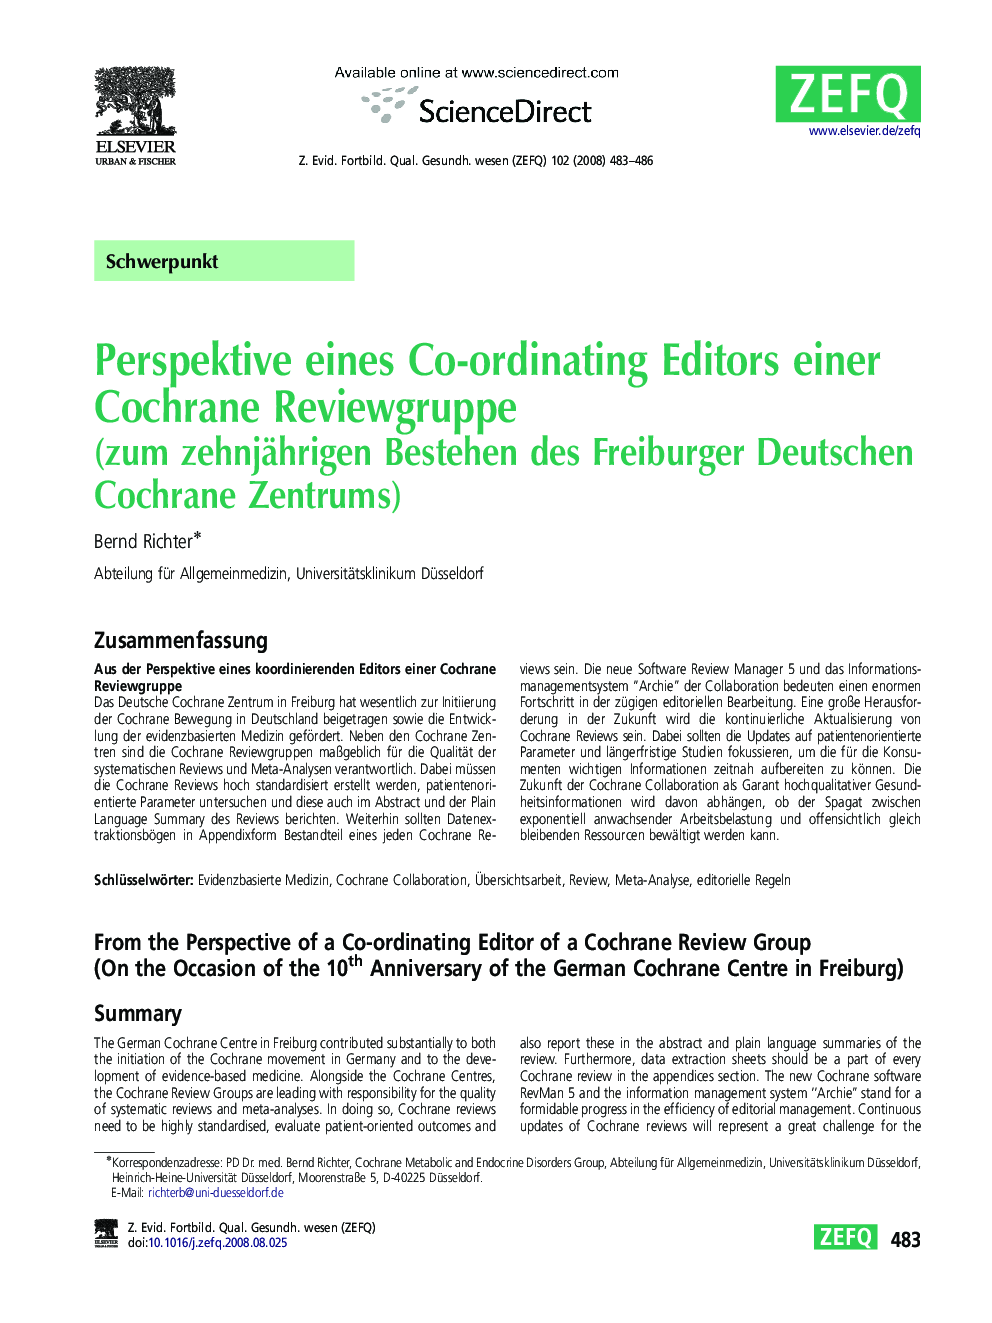 Perspektive eines Co-ordinating Editors einer Cochrane Reviewgruppe: (zum zehnjährigen Bestehen des Freiburger Deutschen Cochrane Zentrums)